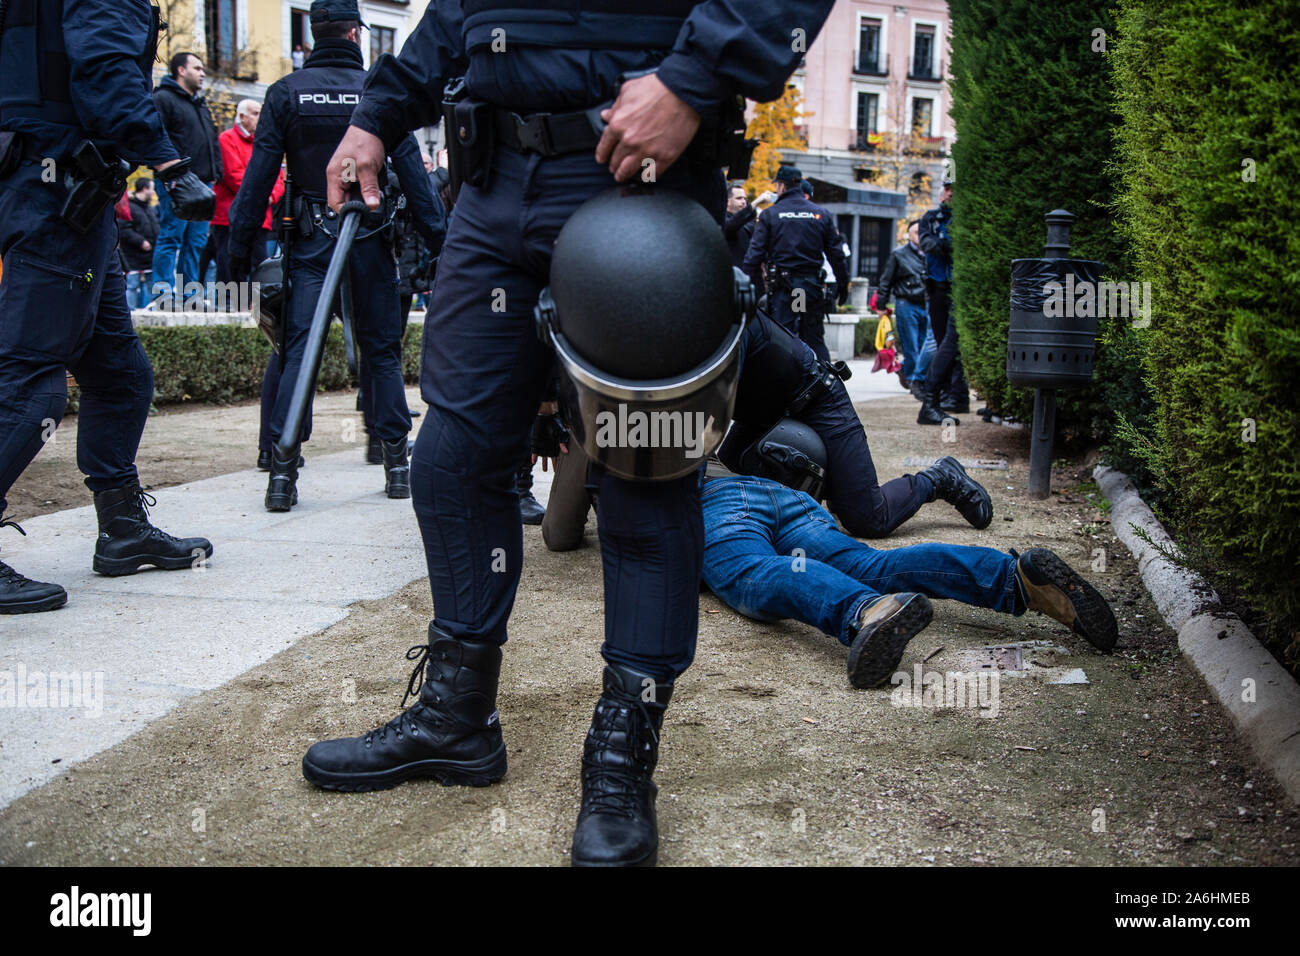 Les agents de police de la détention d'une extrême droite protestataire pendant le rallye. Chaque 20 novembre, des centaines de partisans du régime de Franco en mars un rassemblement pour célébrer et honorer la mort du dictateur (le 20 novembre 1975). Pendant le rallye, trois activistes de FEMEN irrupted exigeant que les manifestations fascistes devrait être légalisé en Espagne. Ils ont été attaqués par des manifestants et un homme a été placé en détention. Banque D'Images